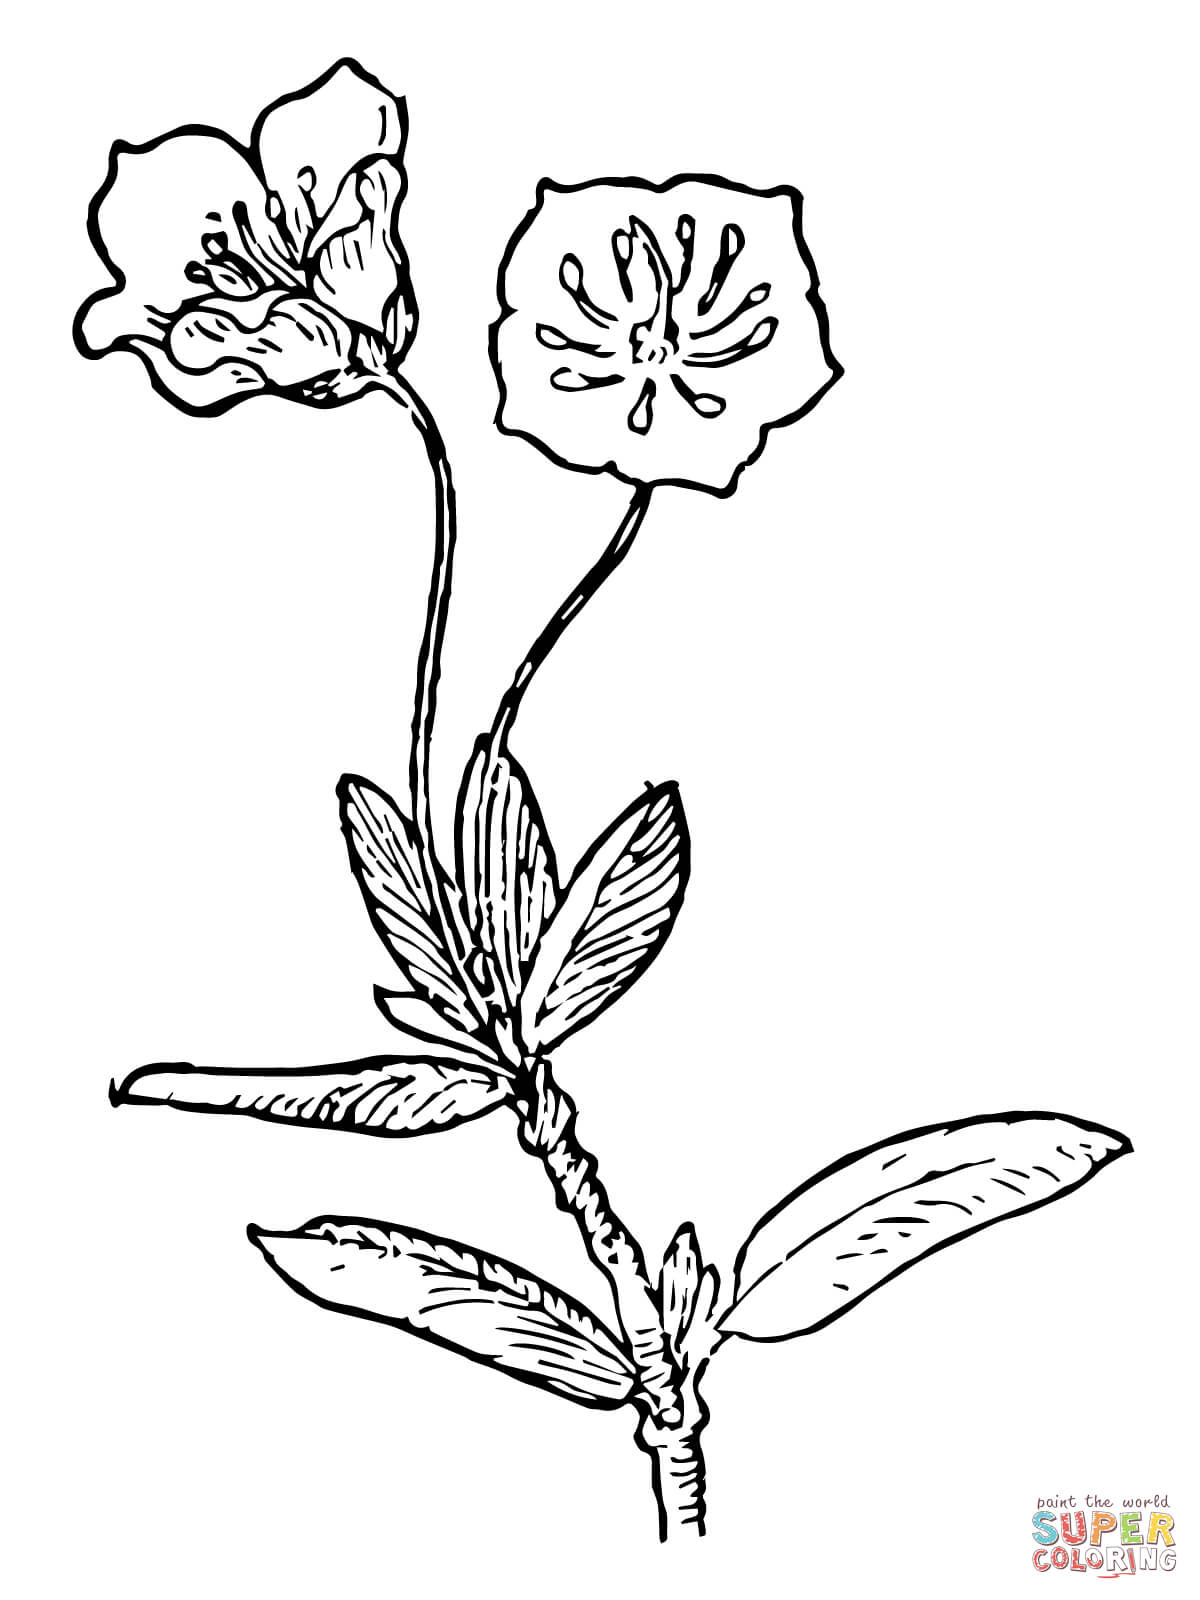 Kalmia Microphylla oder Sumpflorbeer aus Lorbeer